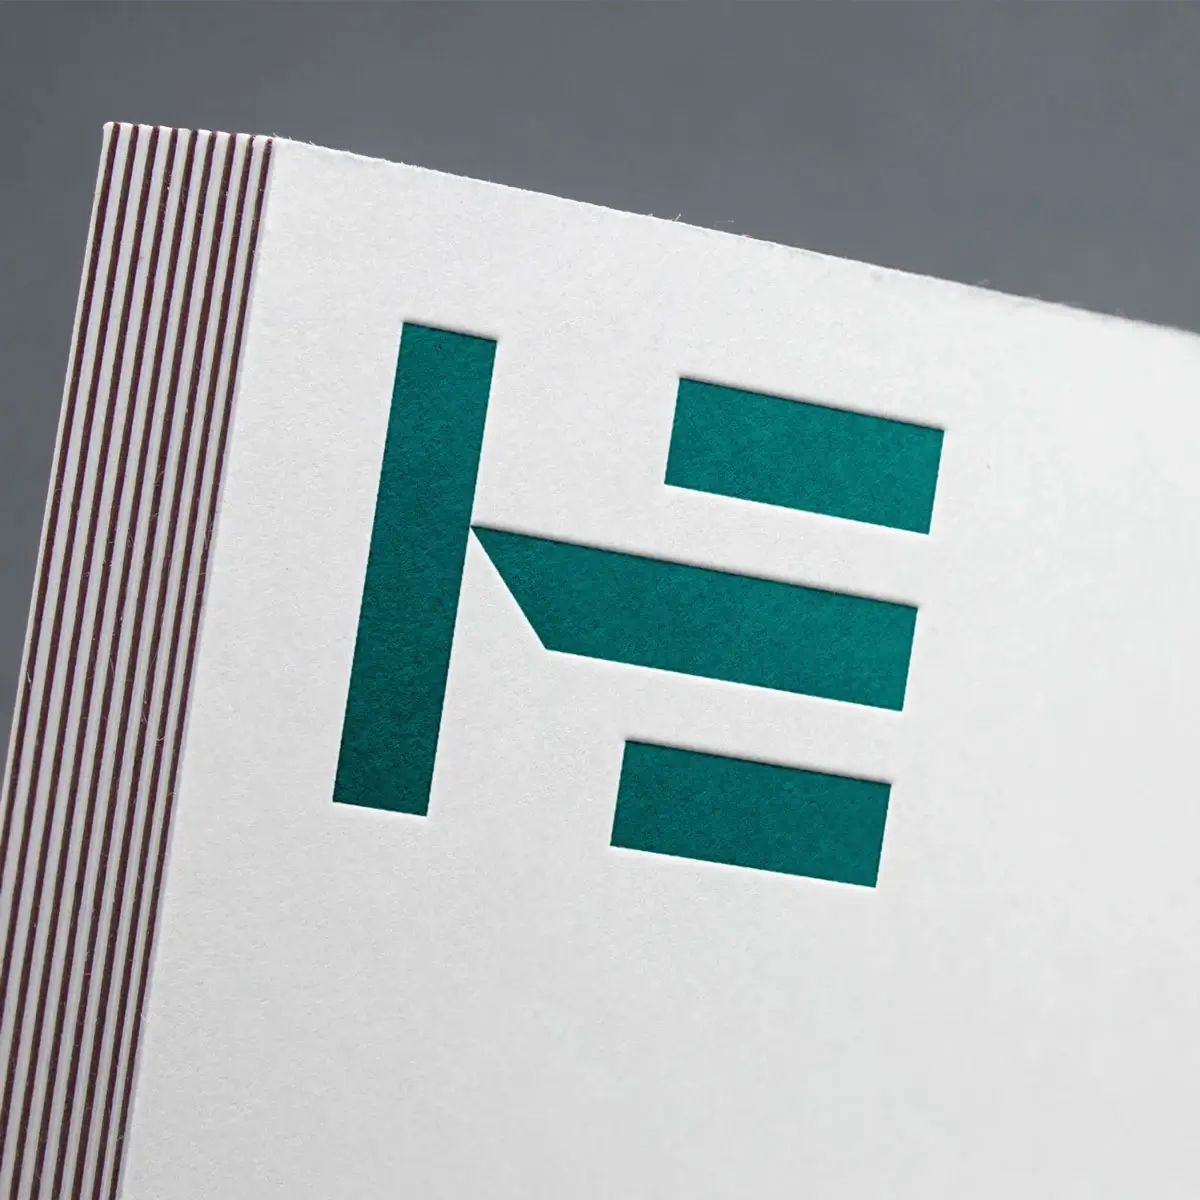 Hede Entreprise Logodesign på papir